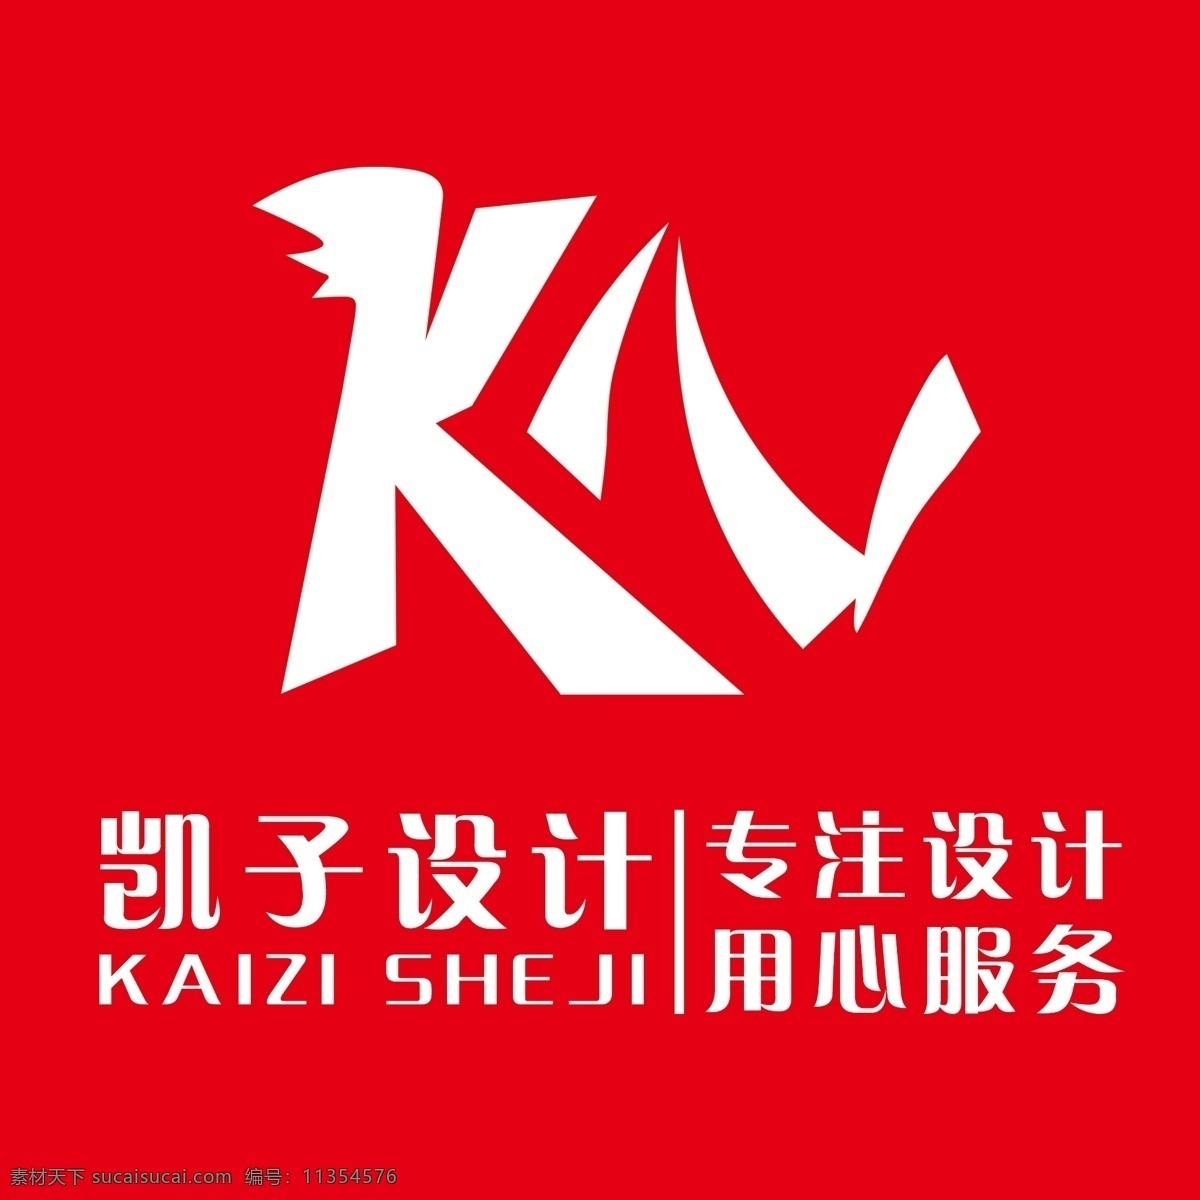 字母标志 kz标志 kz k字母标志 z字母 科技 网络 创意标志 英文字母标志 企业 logo 标志 标识标志图标 海报 标志图标